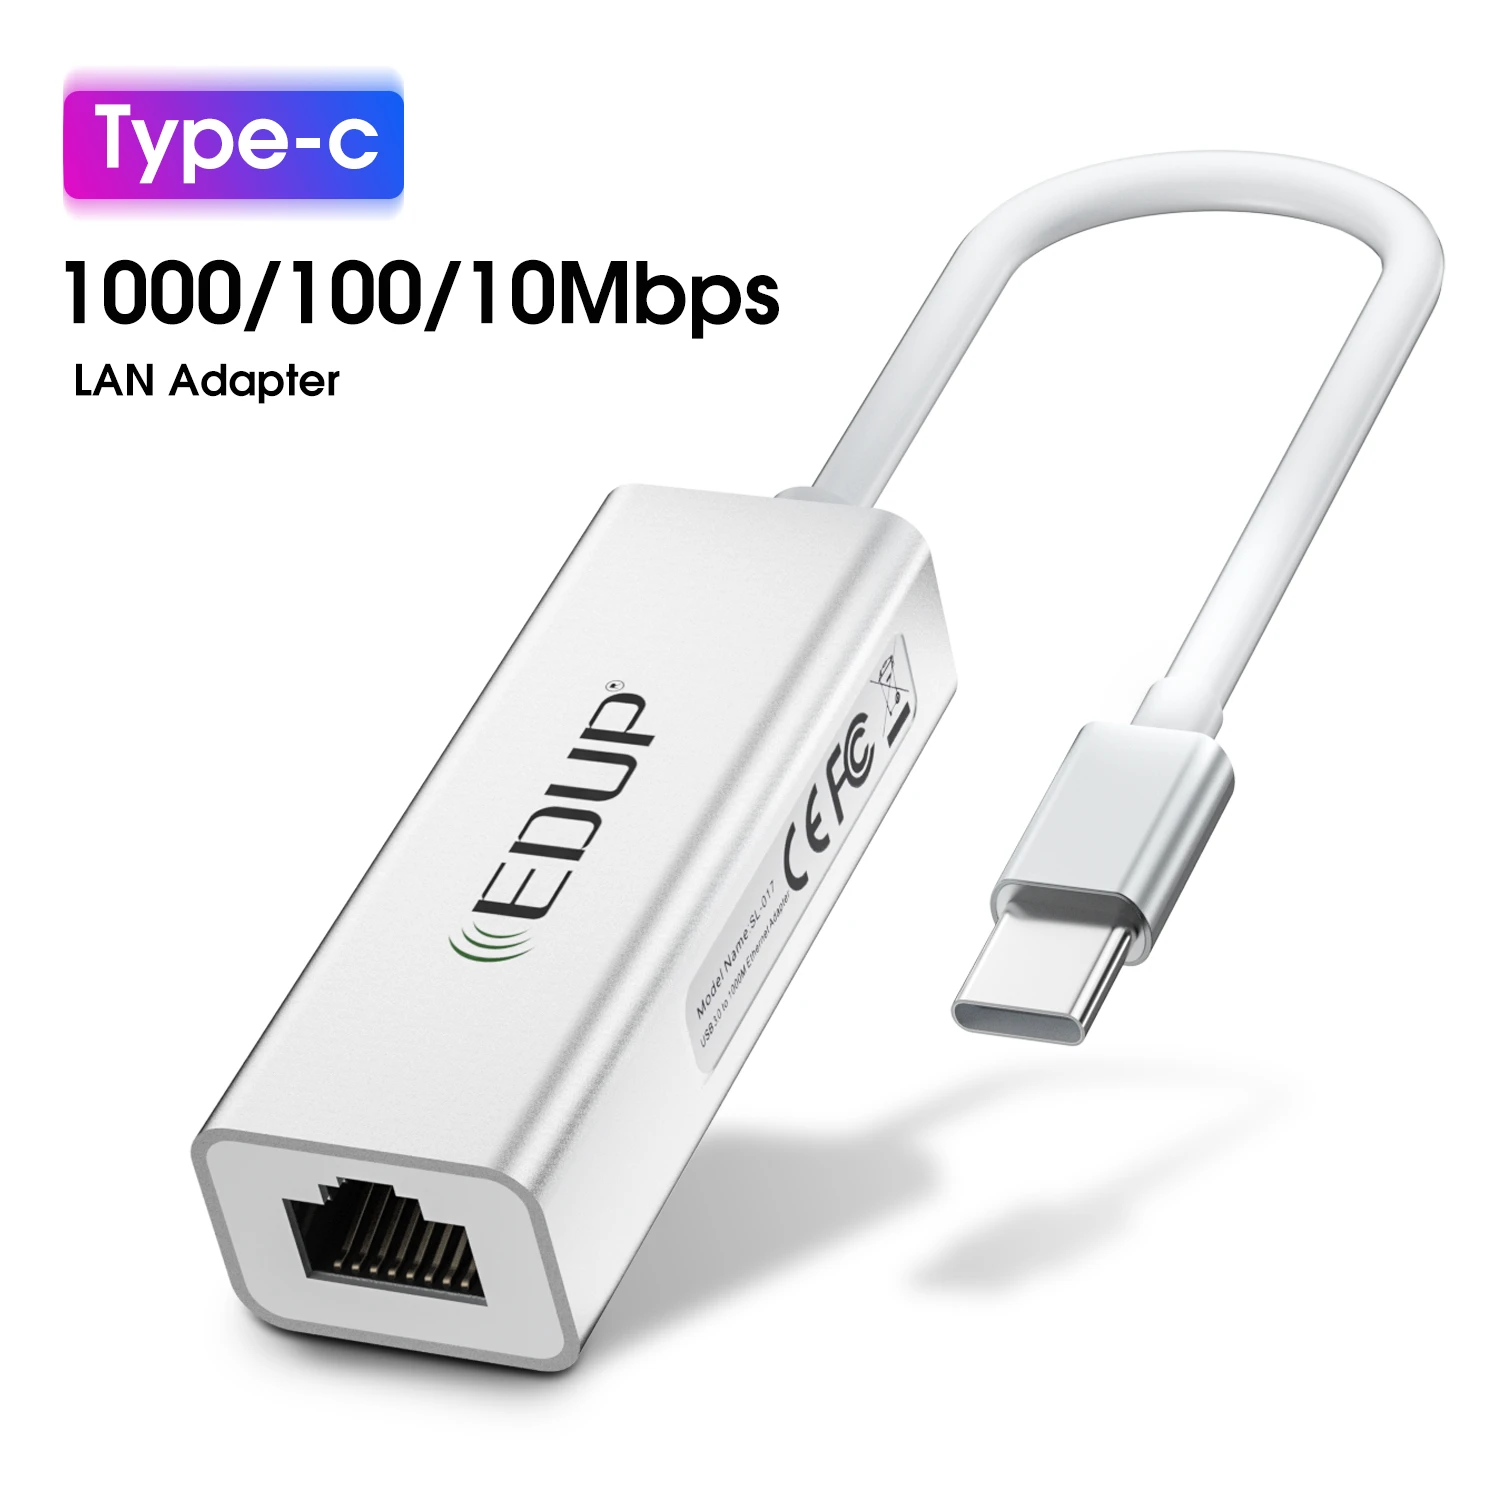 EDUP USB 3.0 to LAN 1000Mbps Ethernet RJ45 Network Adapter for Windows 10/8/7/Vista/XP